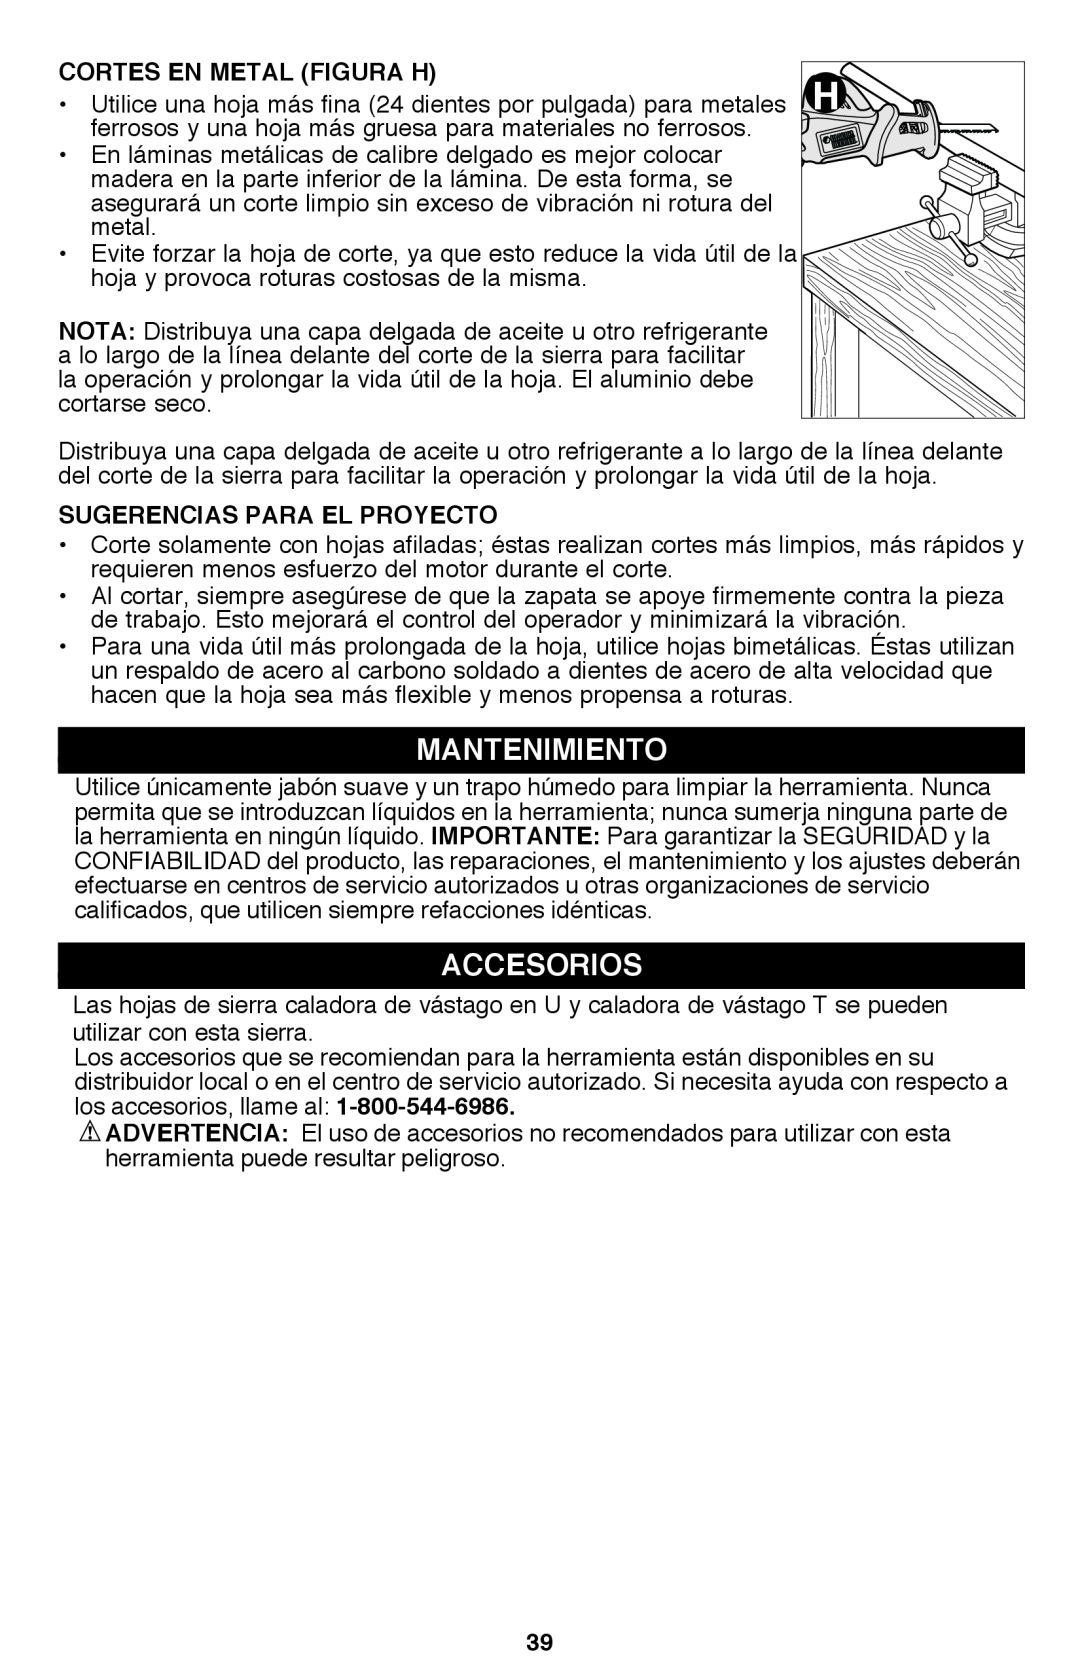 Black & Decker PSL12 instruction manual Mantenimiento, Accesorios, Cortes en metal Figura H, Sugerencias Para El Proyecto 